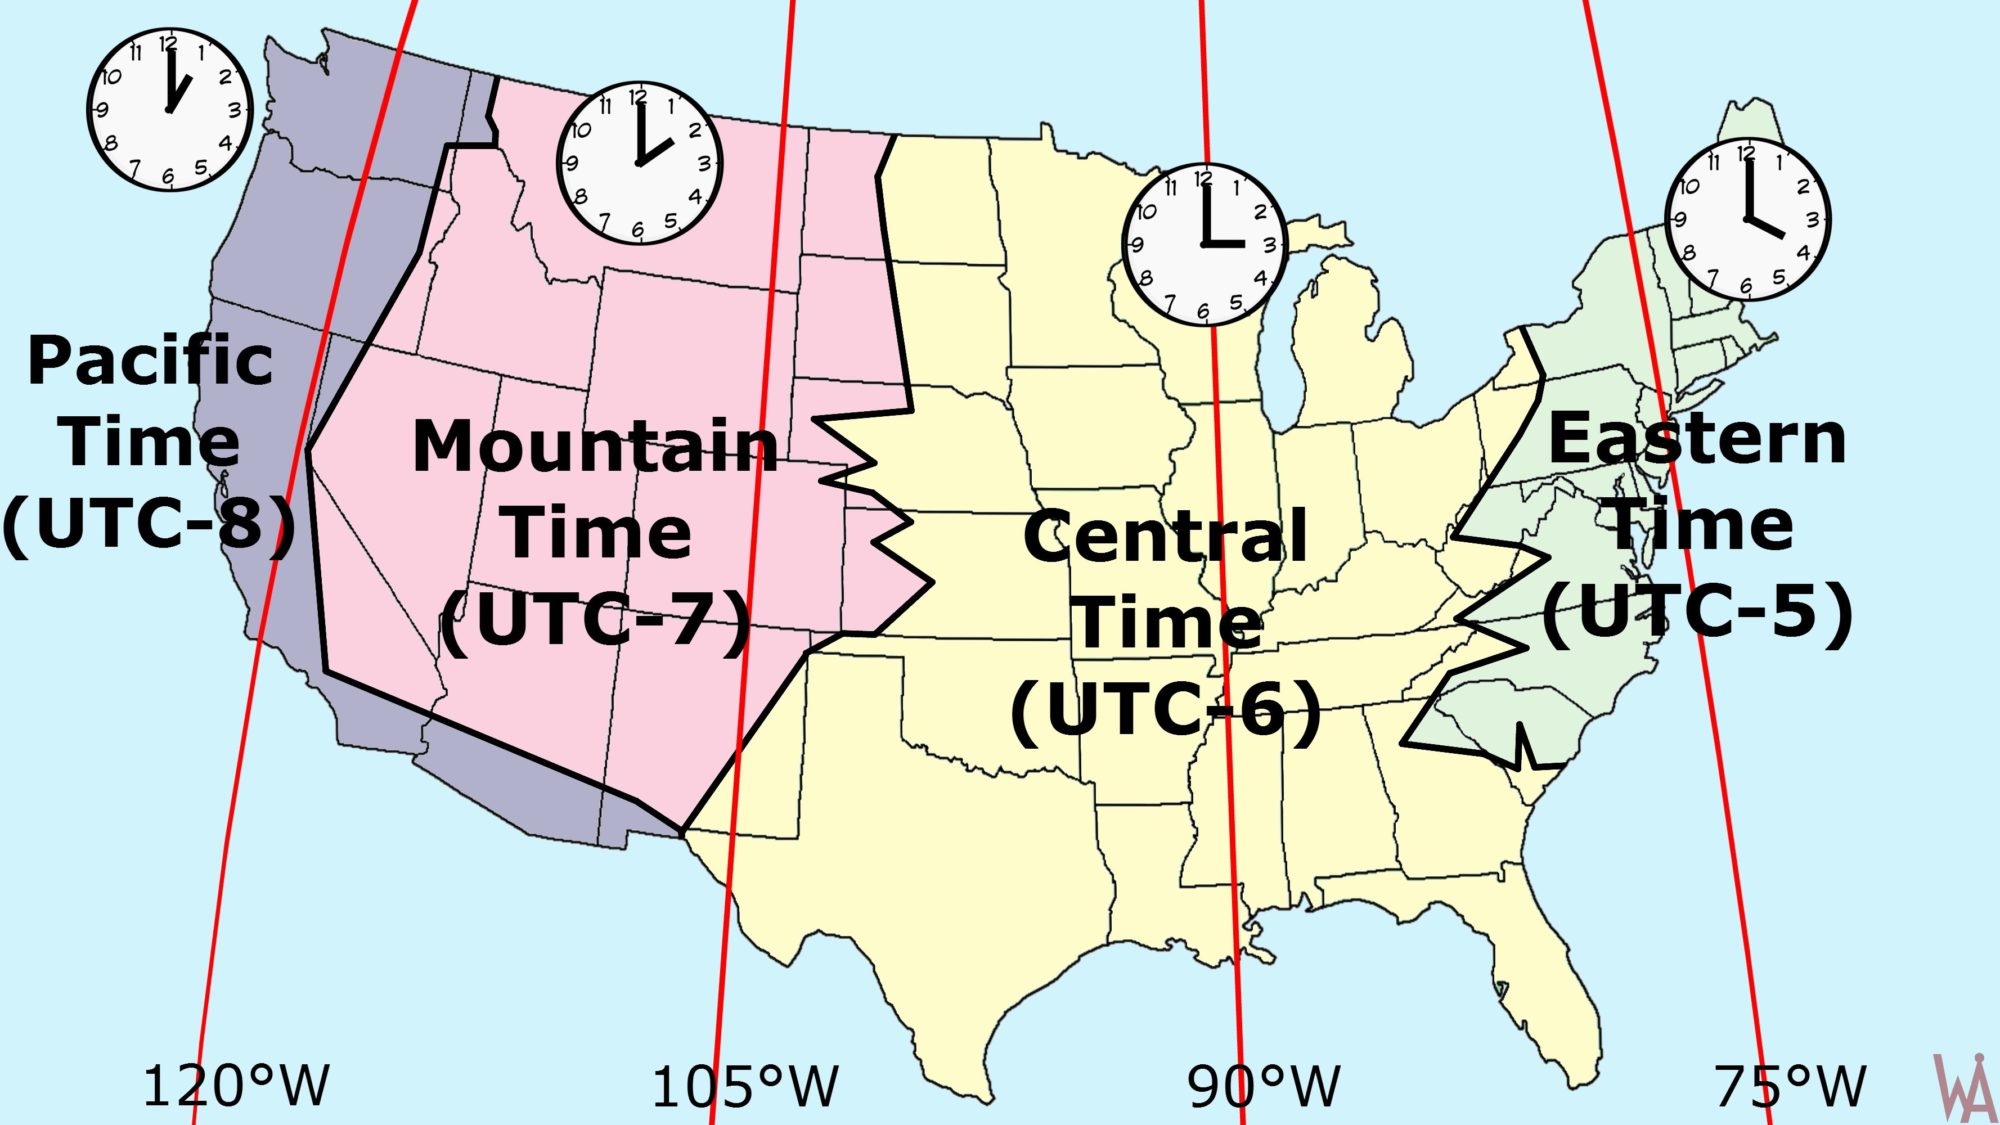 USA_timezones.jpg